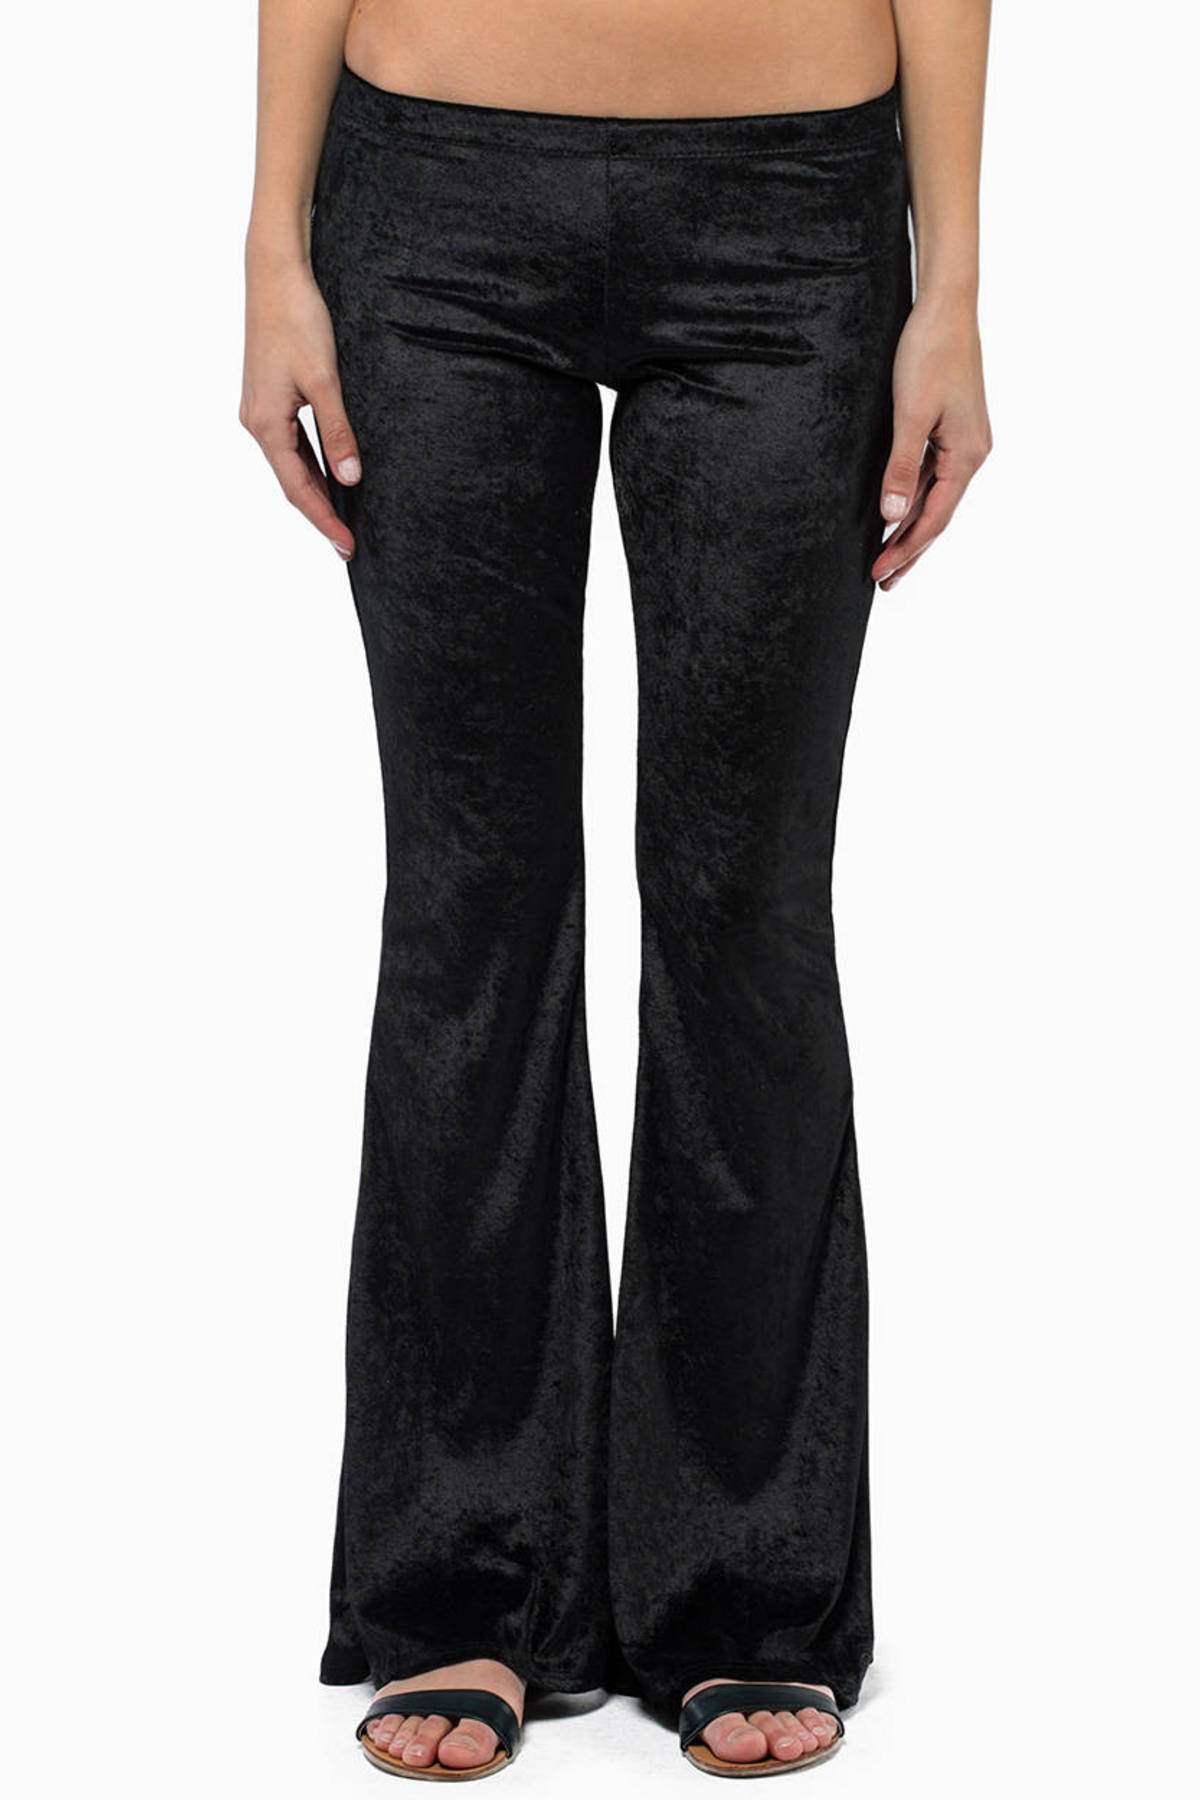 Veloura Flare Pants in Black - $12 | Tobi US